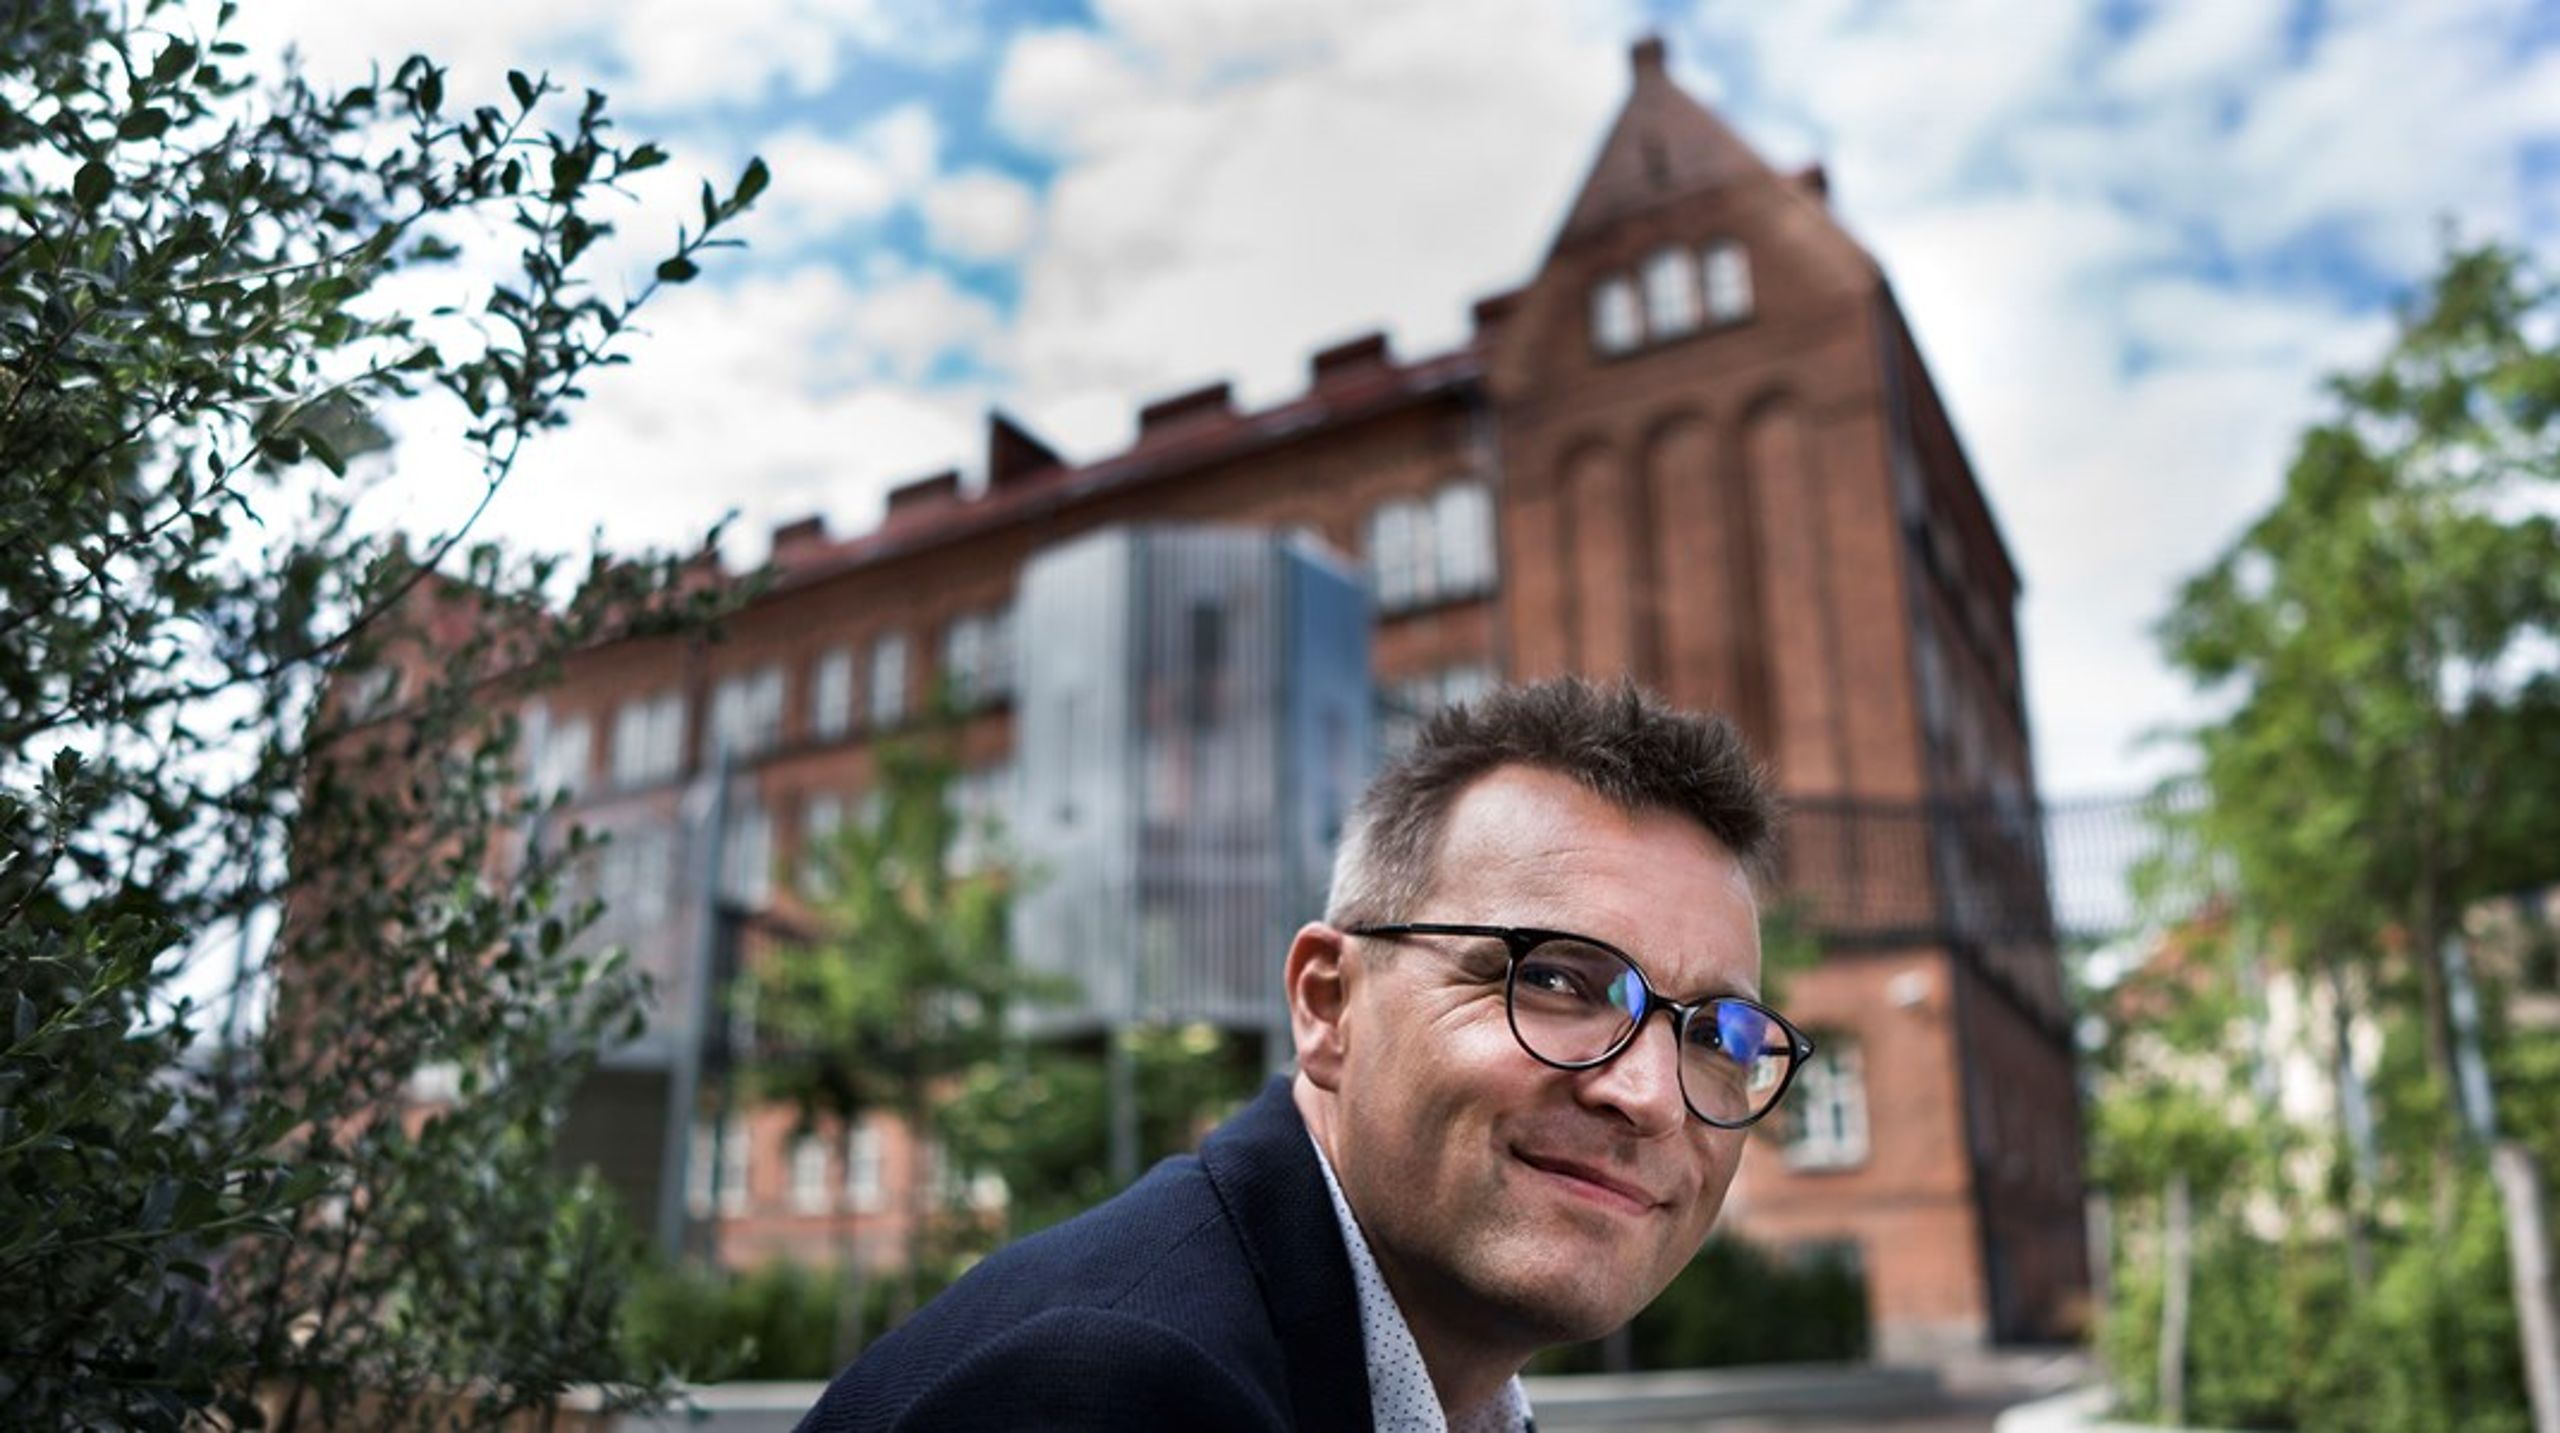 Foto: Søren Bidstrup/Ritzau Scanpix. Jakob Næsager, gruppeformand for Konservative på Københavns Rådhus.&nbsp;